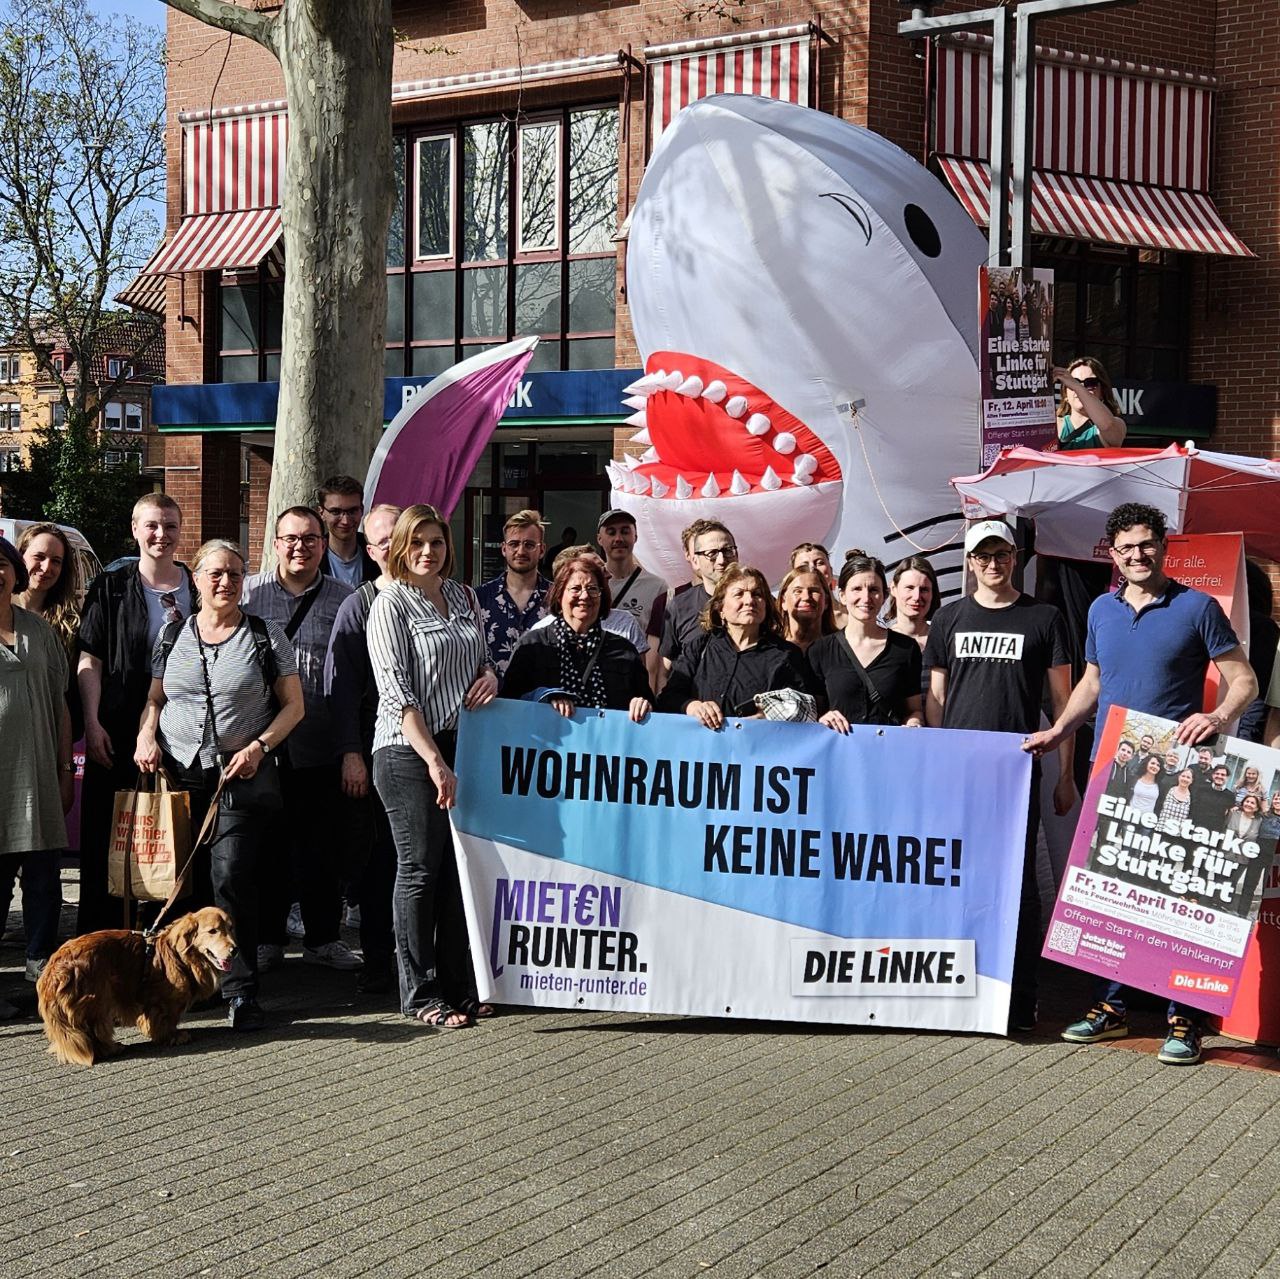 Teilnehmer:innen der Kundgebung Mieten Runter halten ein Banner auf dem steht: Wohnraum ist keine Ware. Im Hintergrund ist ein großer Aufblasbarer Hai.